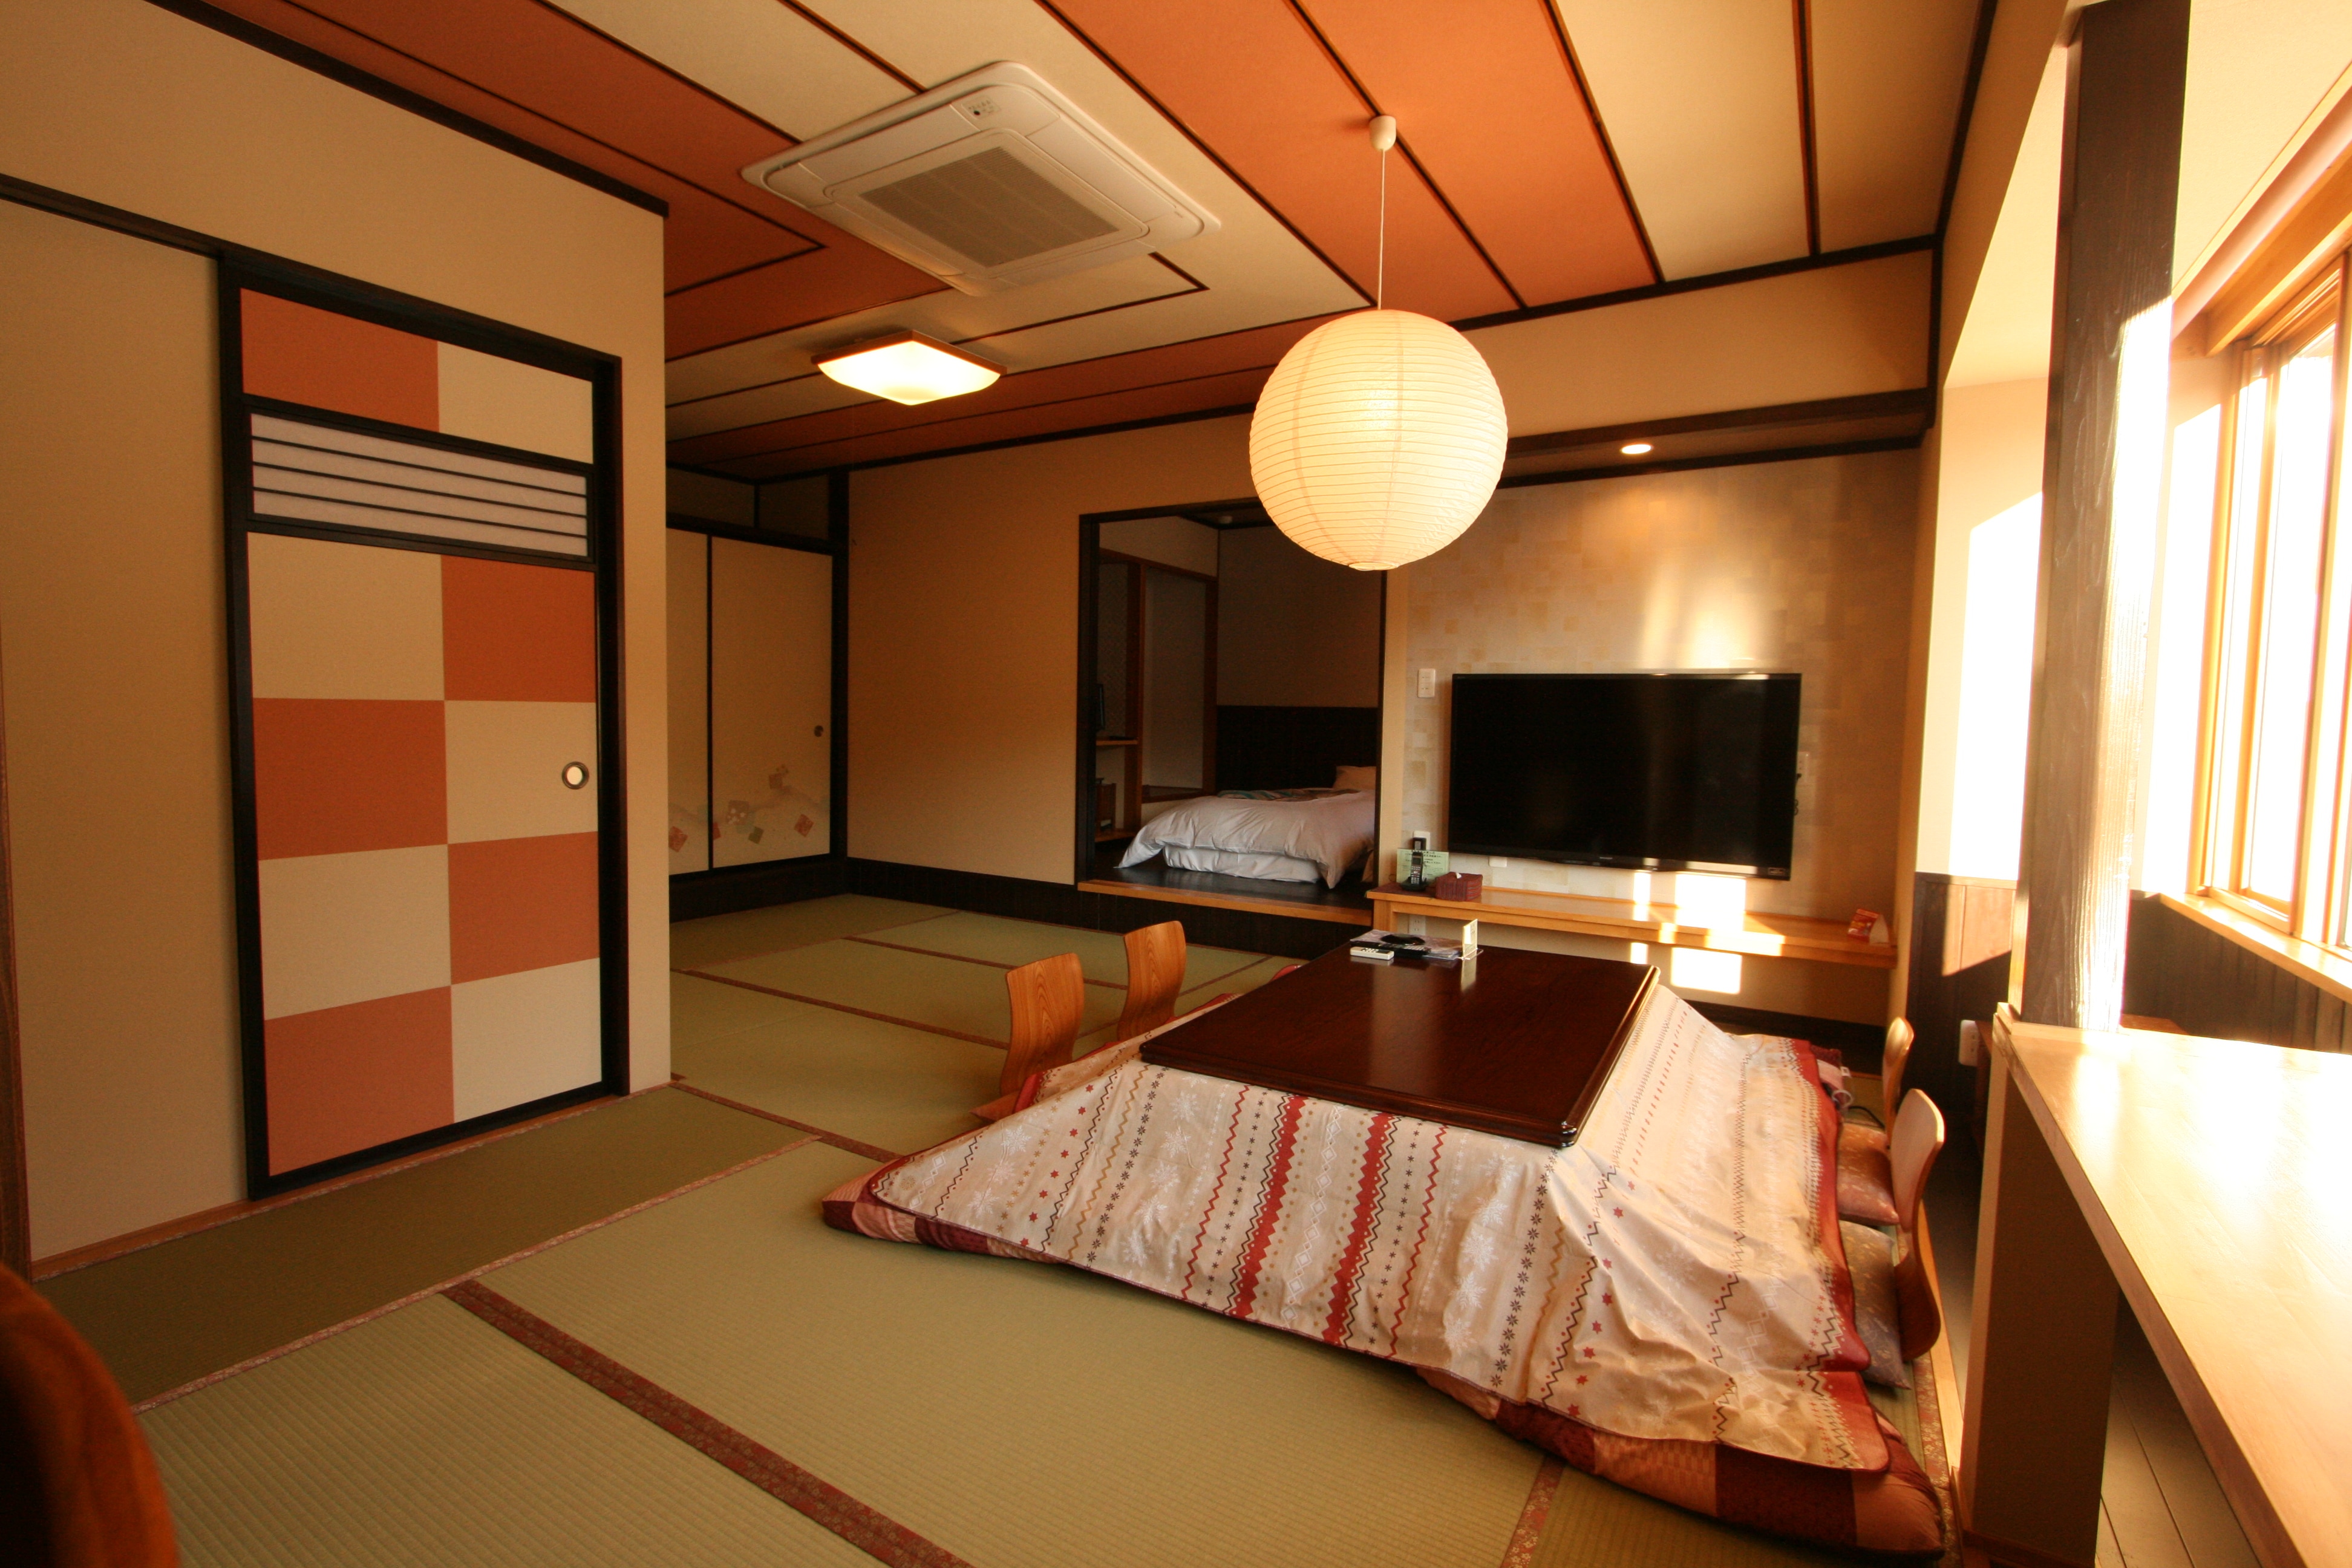 ก่อตั้งขึ้นใหม่ในเดือนมกราคม R4! เตียงต่ำแฝด + เสื่อทาทามิ 14 เสื่อ Kotatsu ห้องสไตล์ญี่ปุ่นสมัยใหม่ [ห้องพิเศษเฉพาะชั้น 2 เท่านั้น] 2 ห้องน้ำและ 2 อ่างล้างหน้า